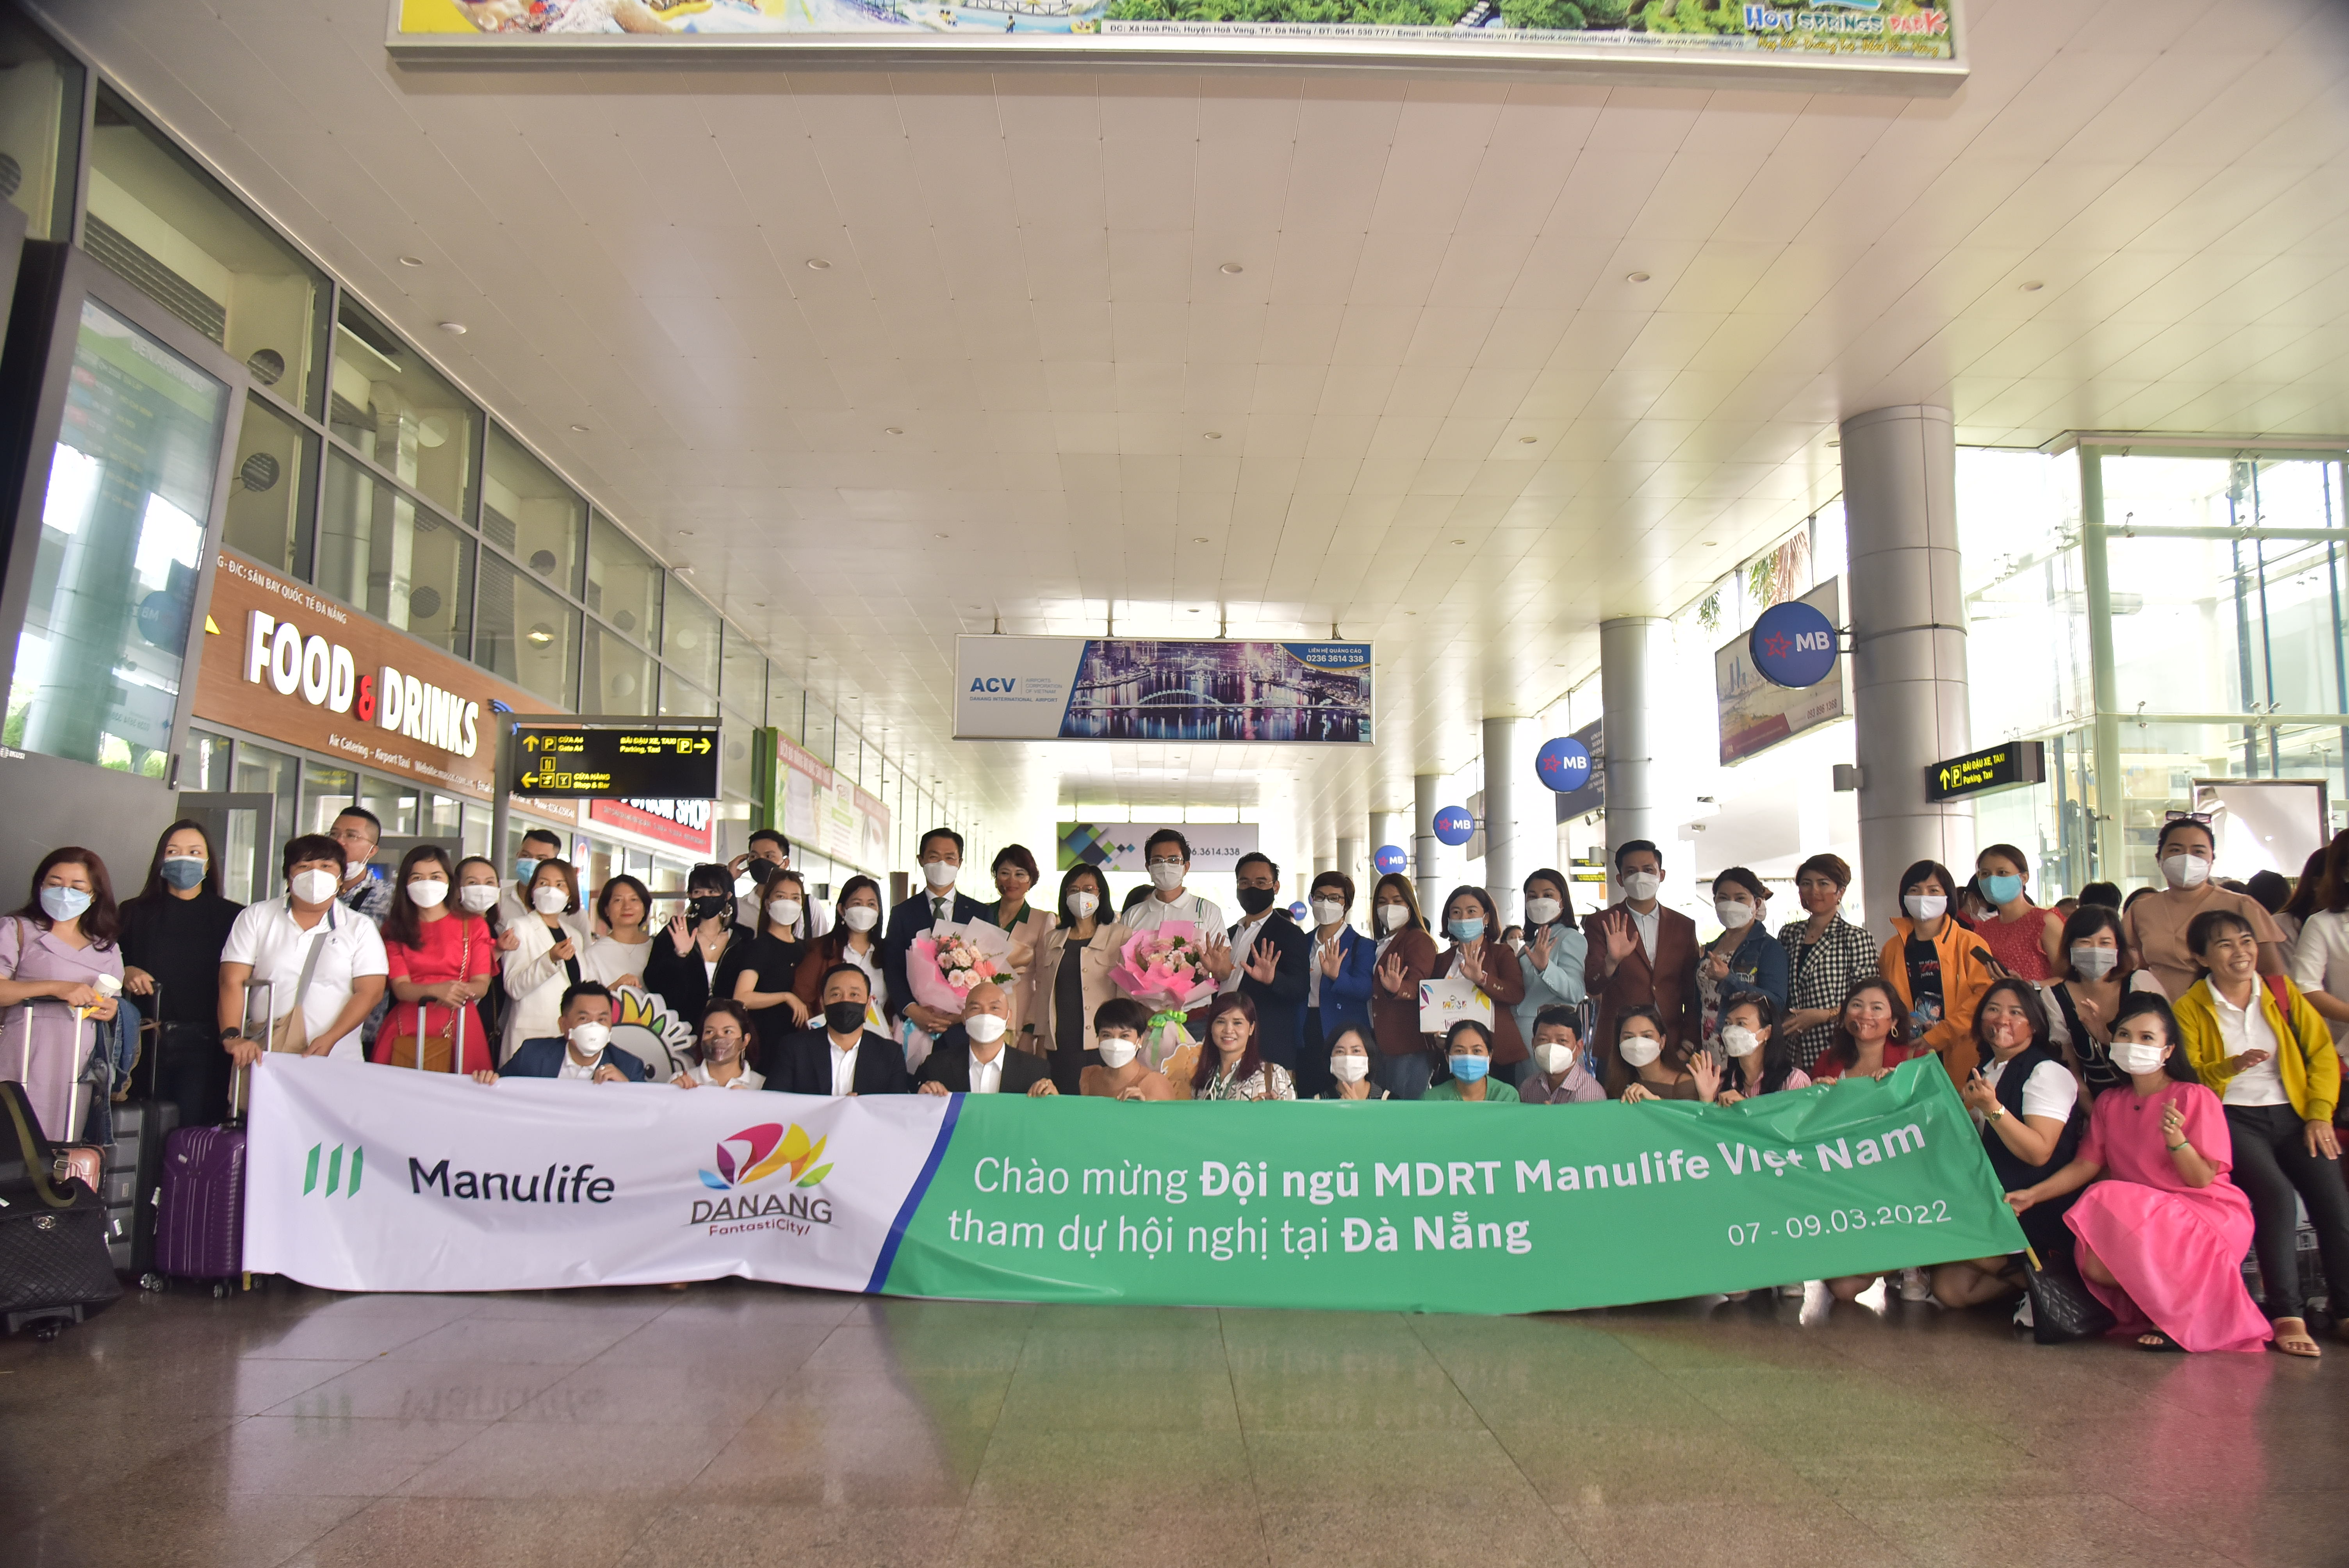 Đoàn khách dự Hội nghị MDRT Toàn quốc 2022 của Manulife Việt Nam đến với Đà Nẵng từ ngày 07-09/3/2022